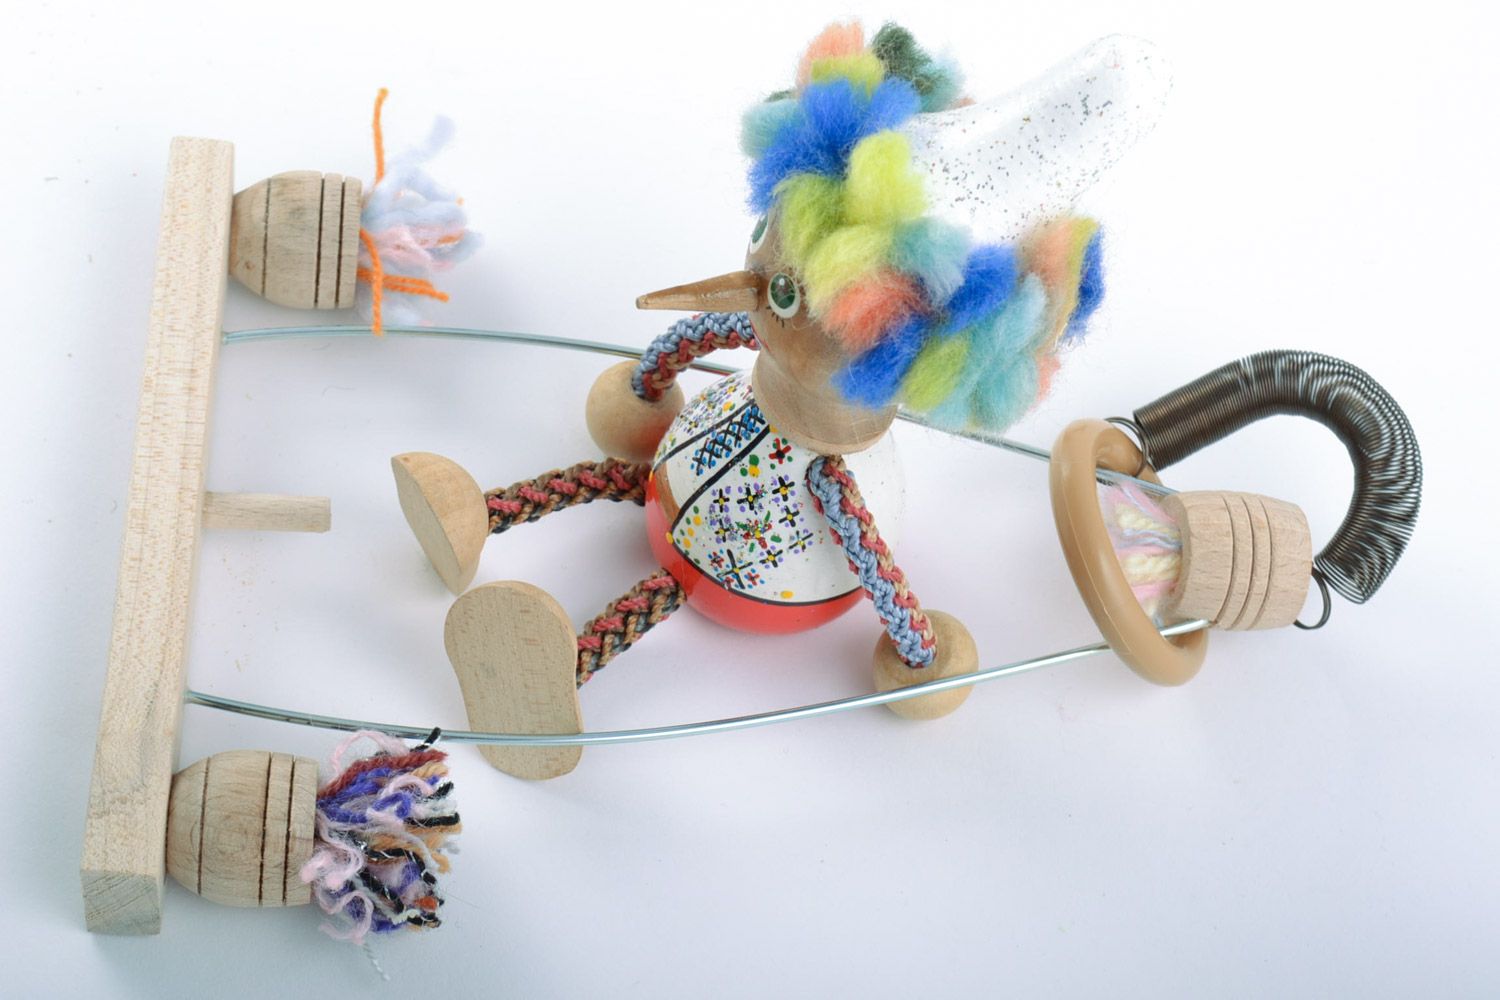 Designer Holz Spielzeug Junge mit Schaukel und Bemalung künstlerische Handarbeit foto 5